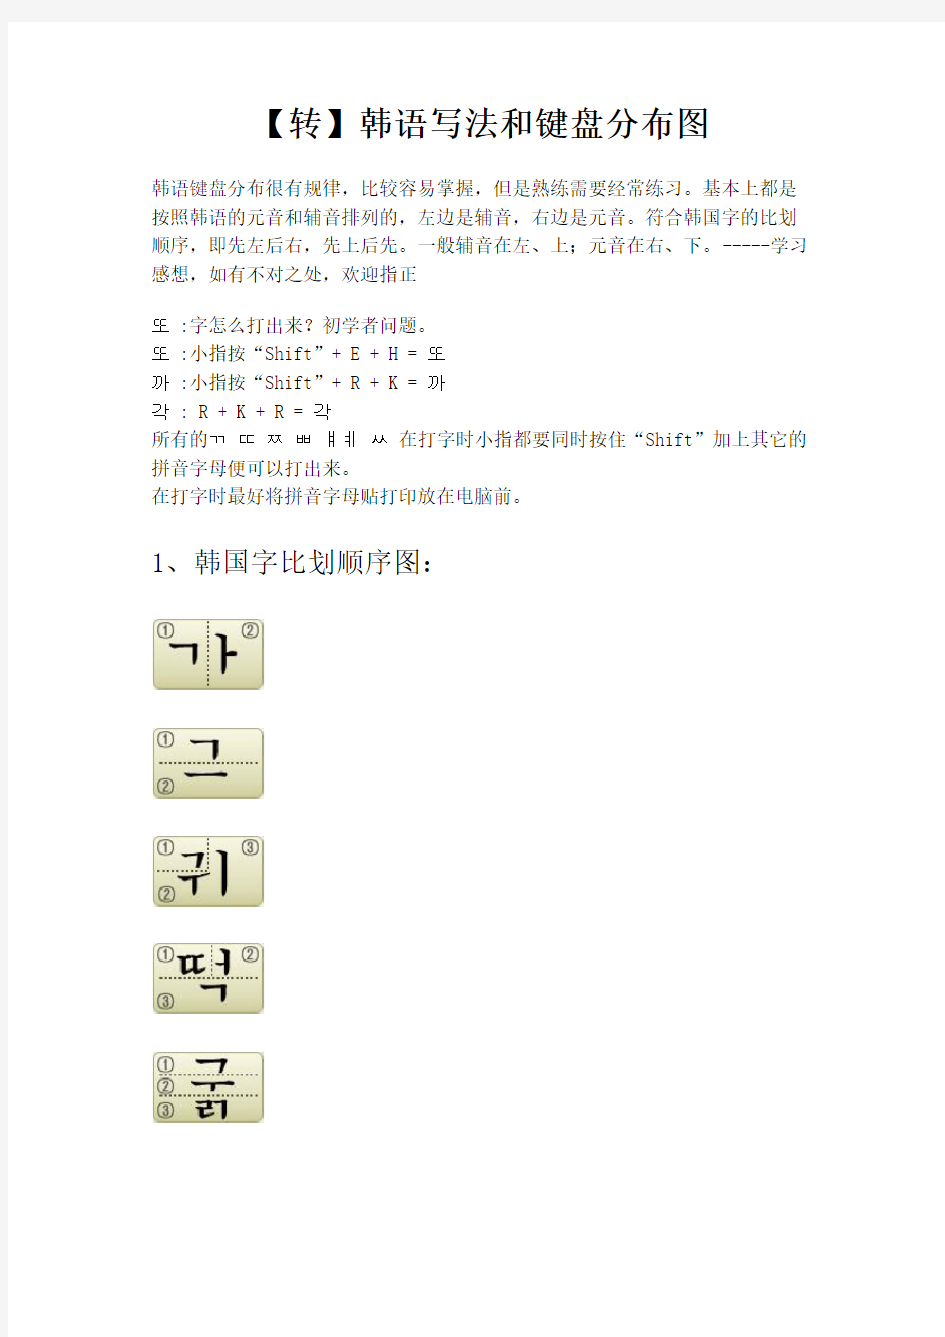 【转】韩语写法和键盘分布图